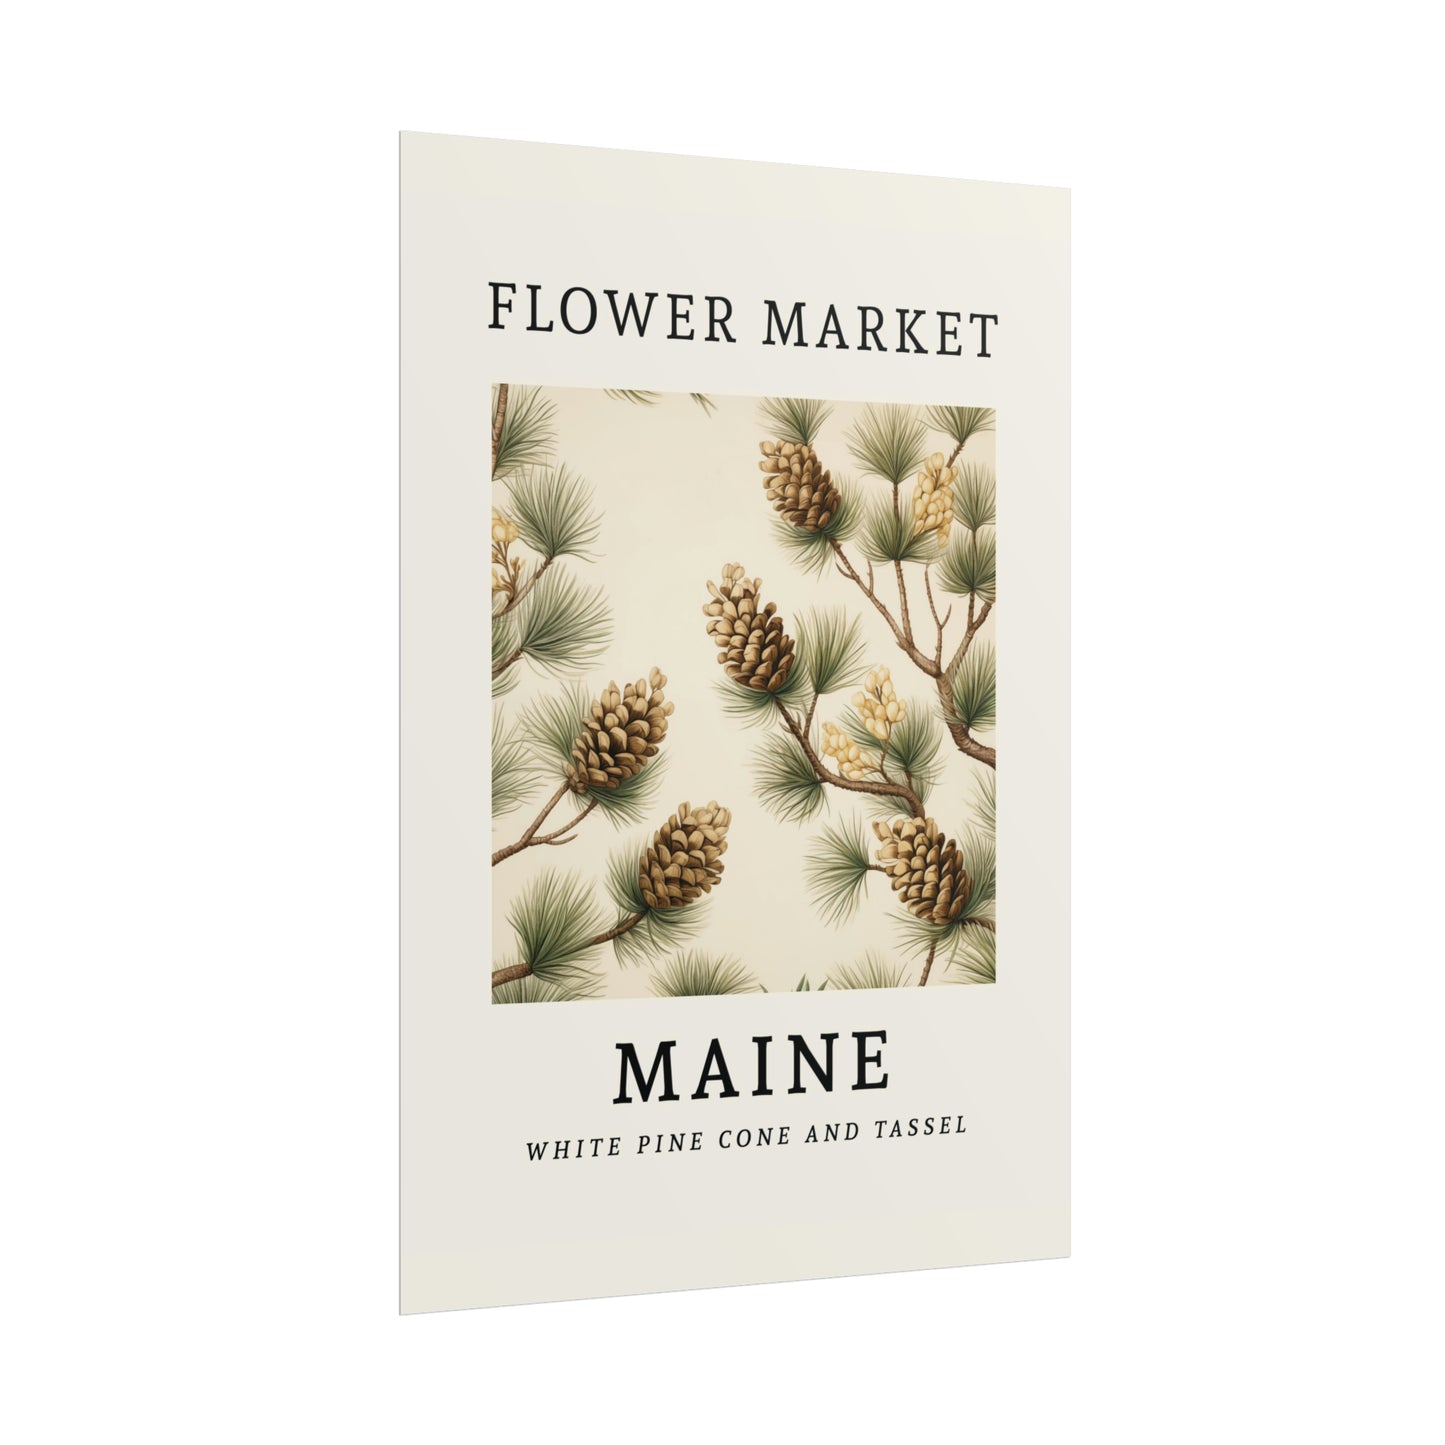 MAINE FLOWER MARKET White pine cone tassel Print